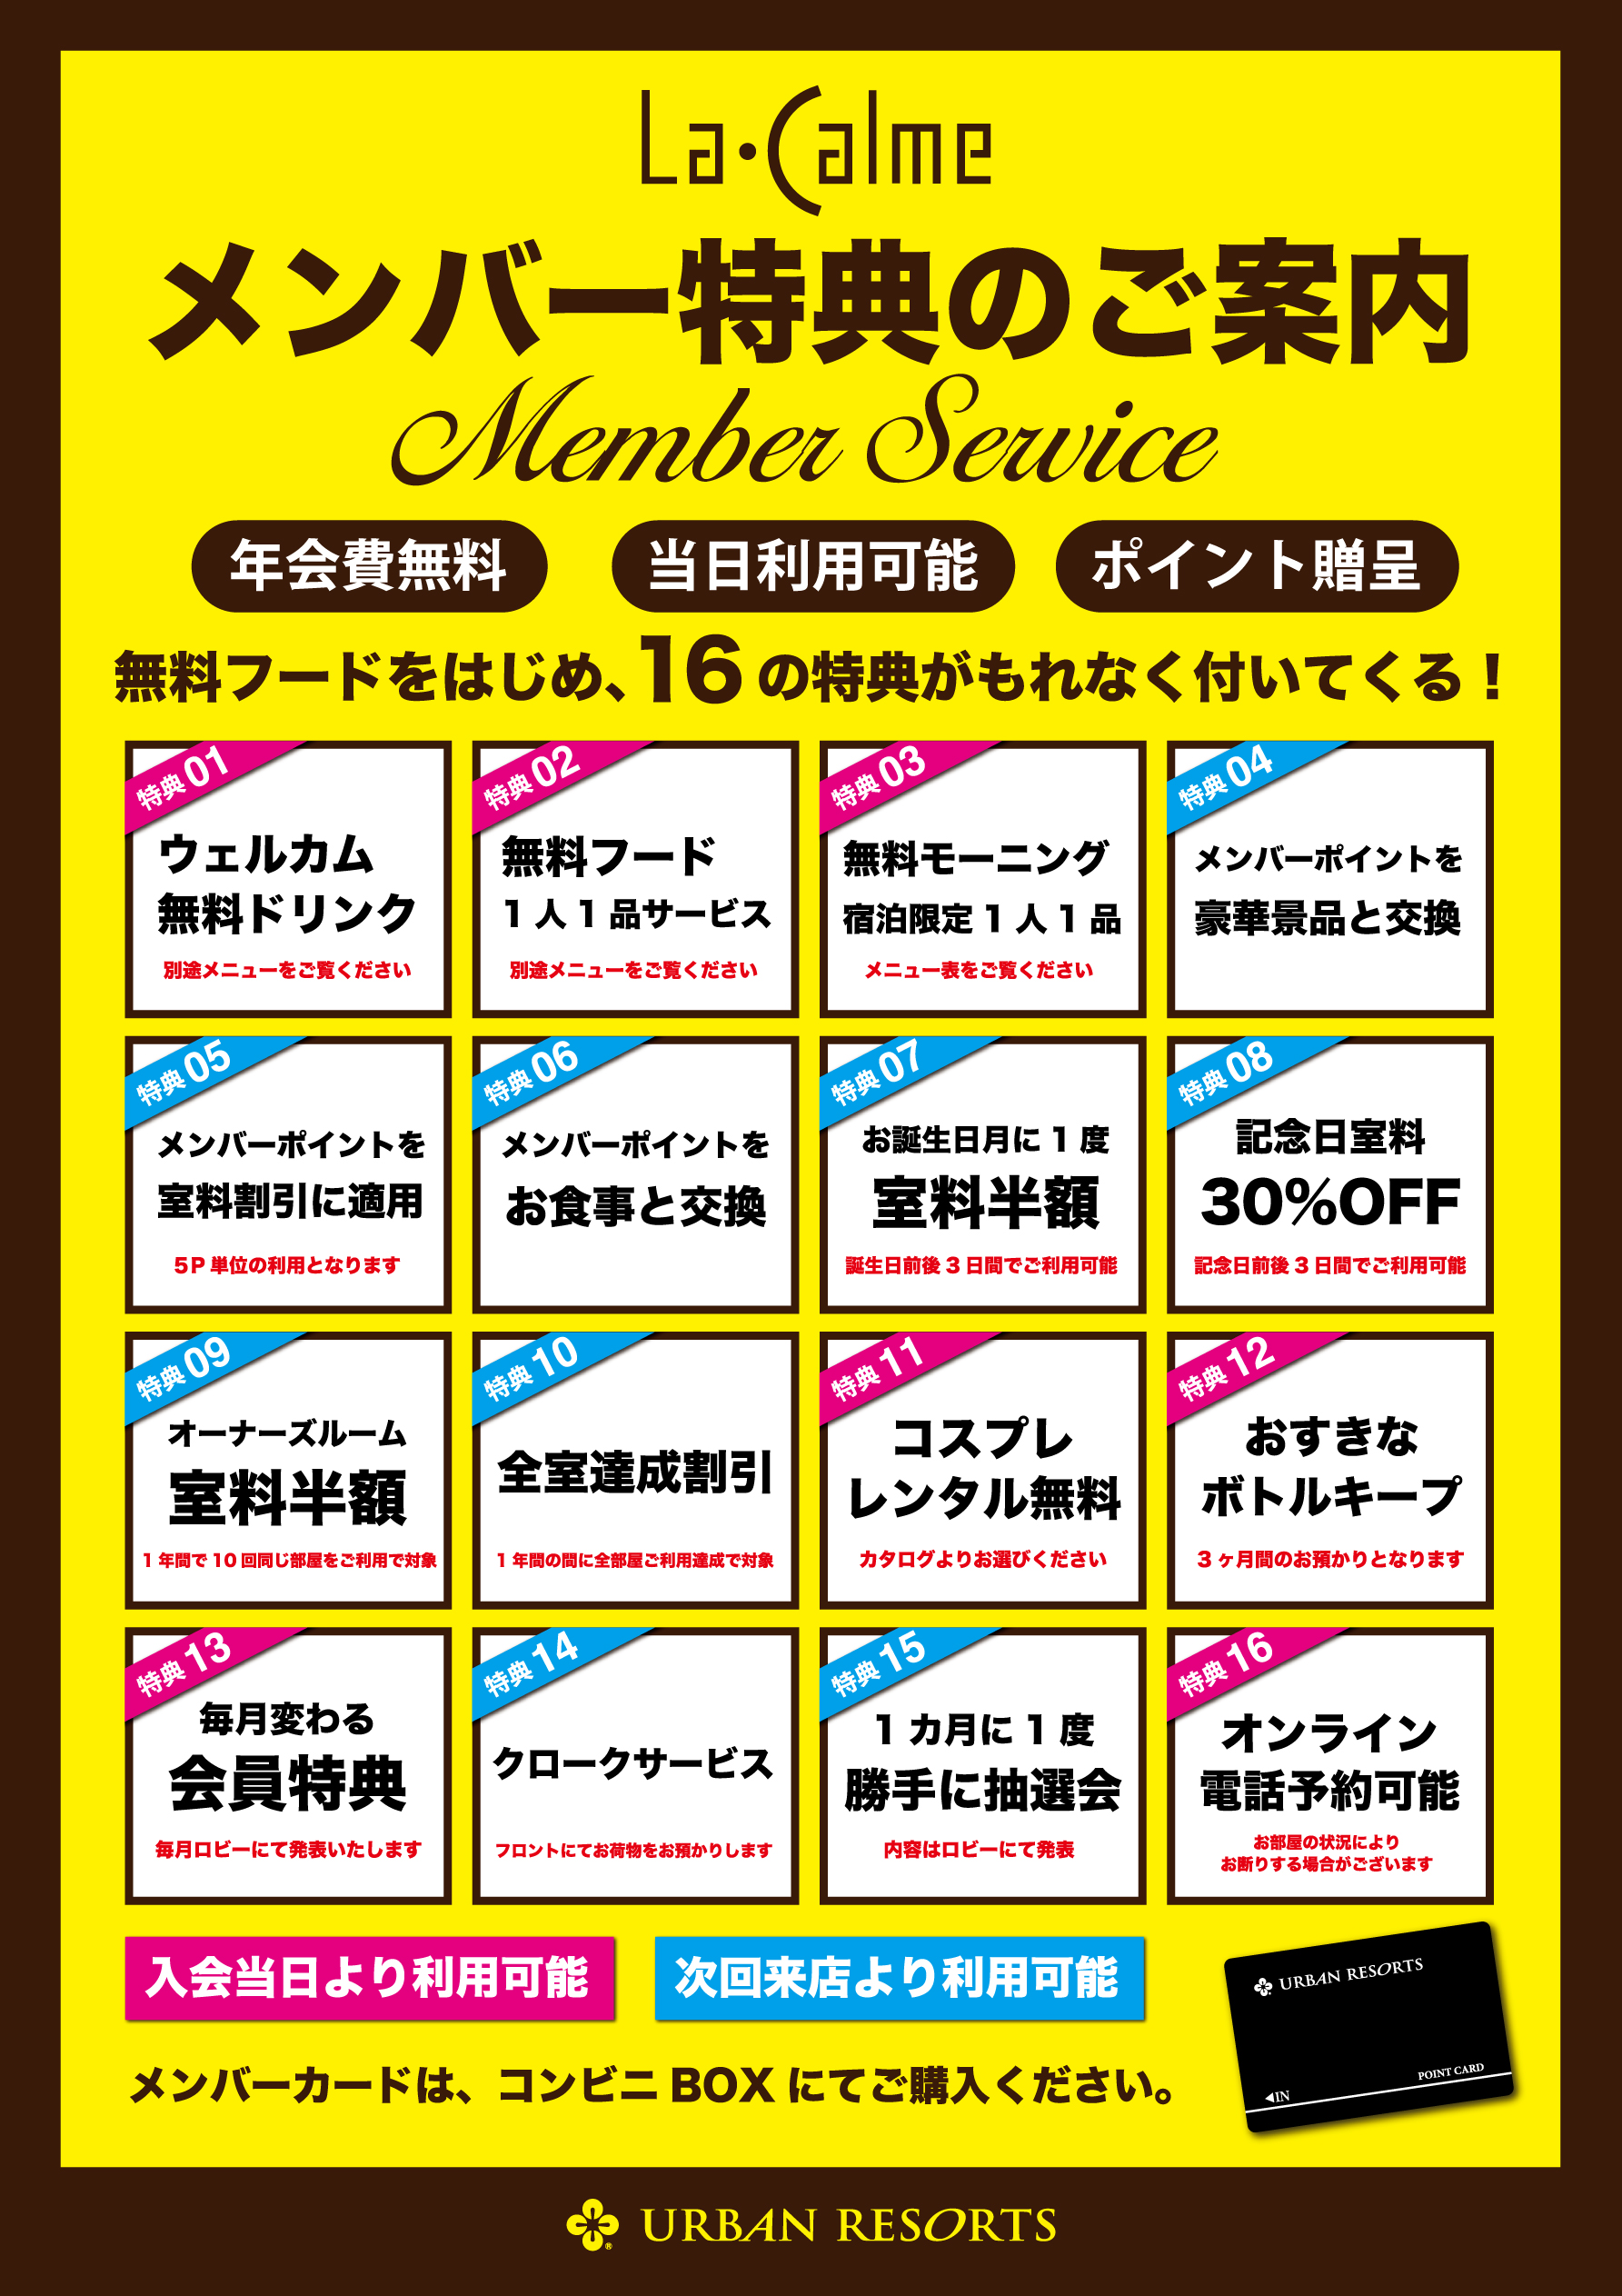 members